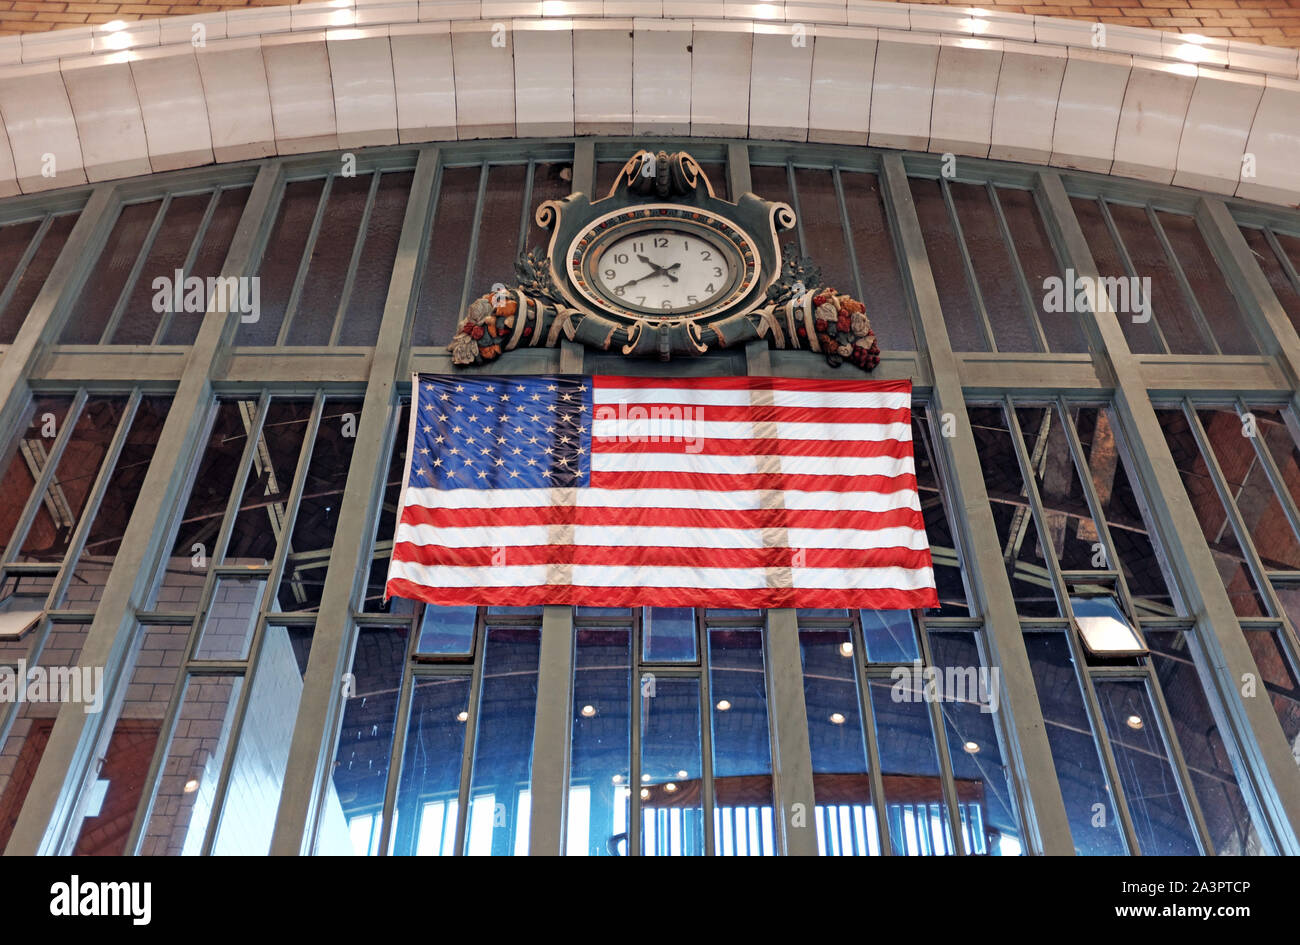 Un drapeau américain est suspendu au-dessus du côté ouest de l'intérieur du marché alors qu'un réveil historique au-dessus montre le temps dans ce site historique de Cleveland, Ohio, USA. Banque D'Images